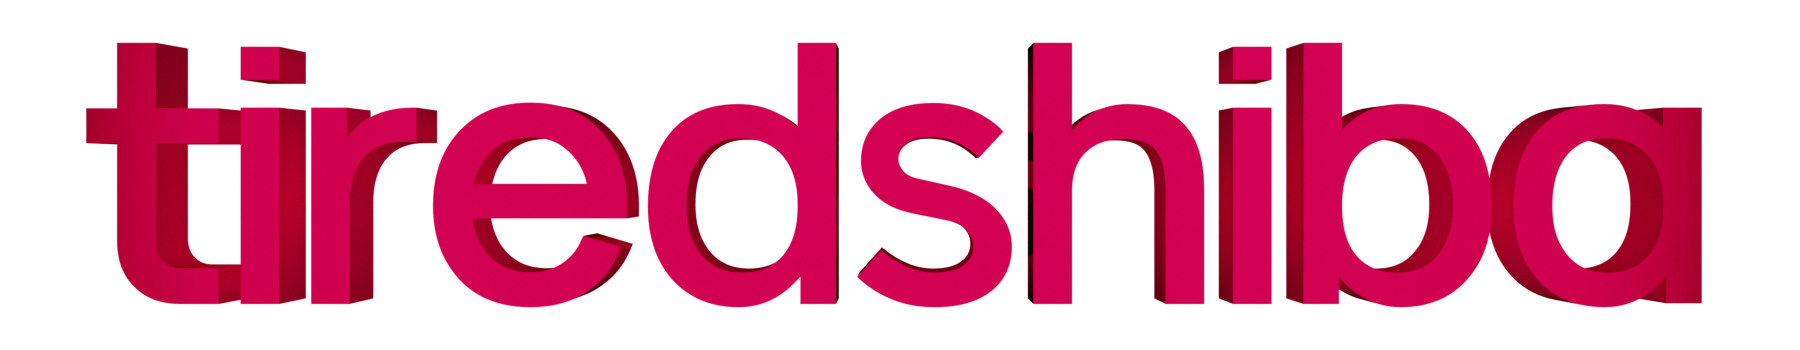 tiredshiba logo